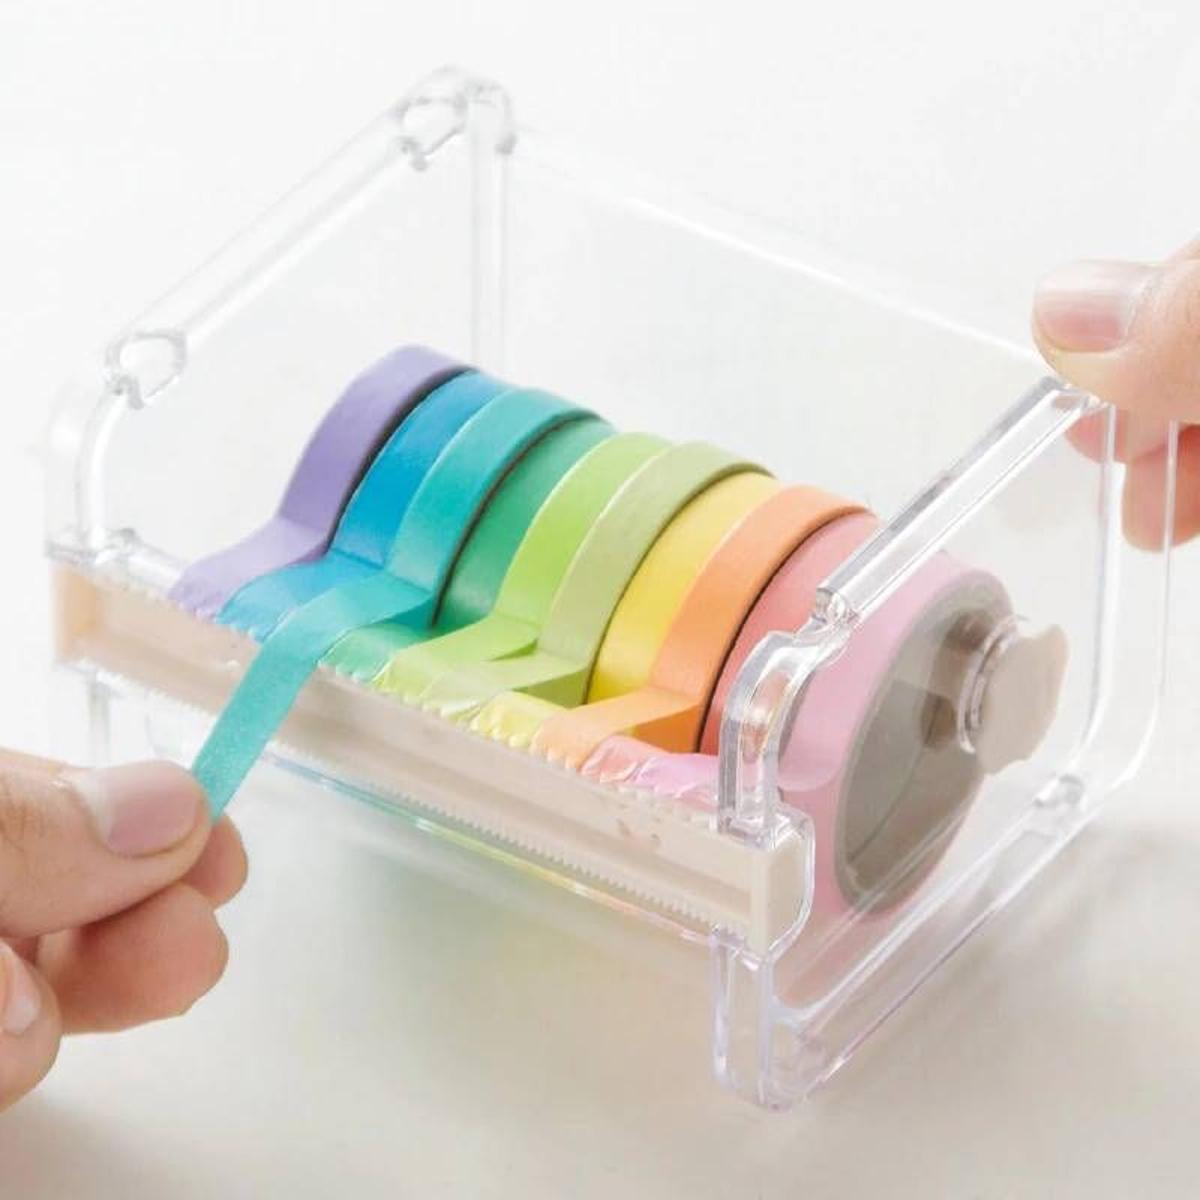 Washi tape de colores pastel con dispensador incluido